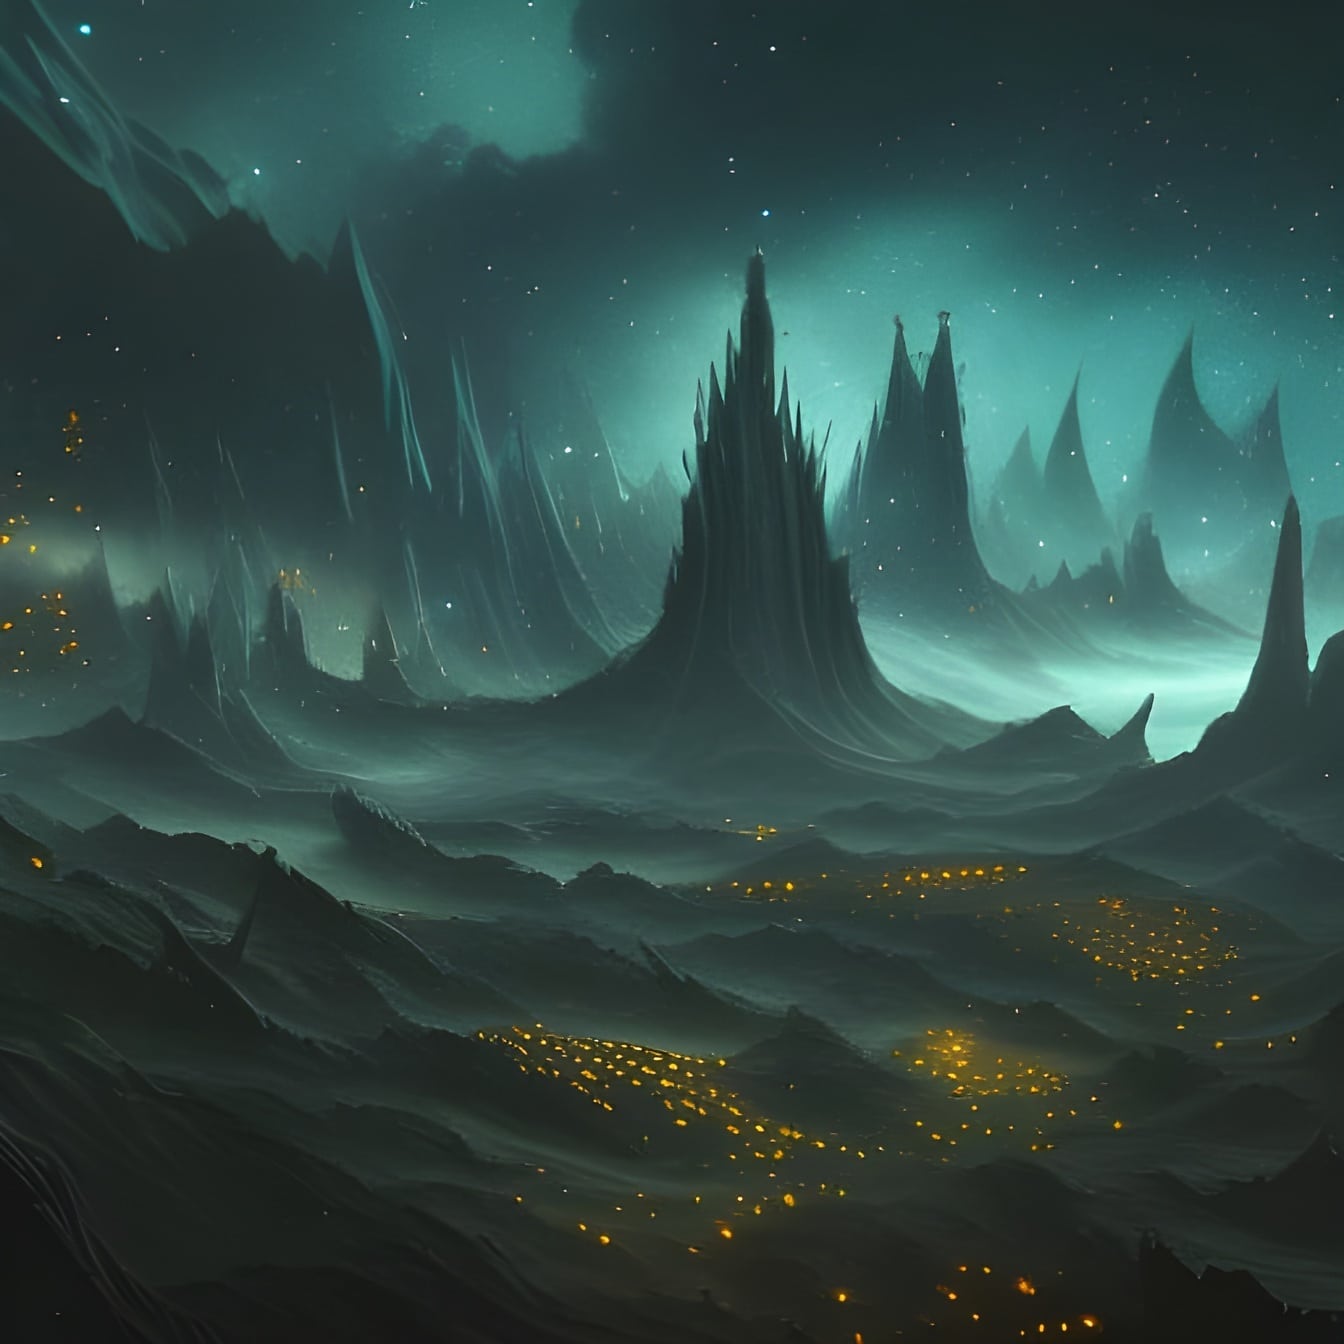 Mørkegrønn himmel på fantasiplanet futuristisk illustrasjon